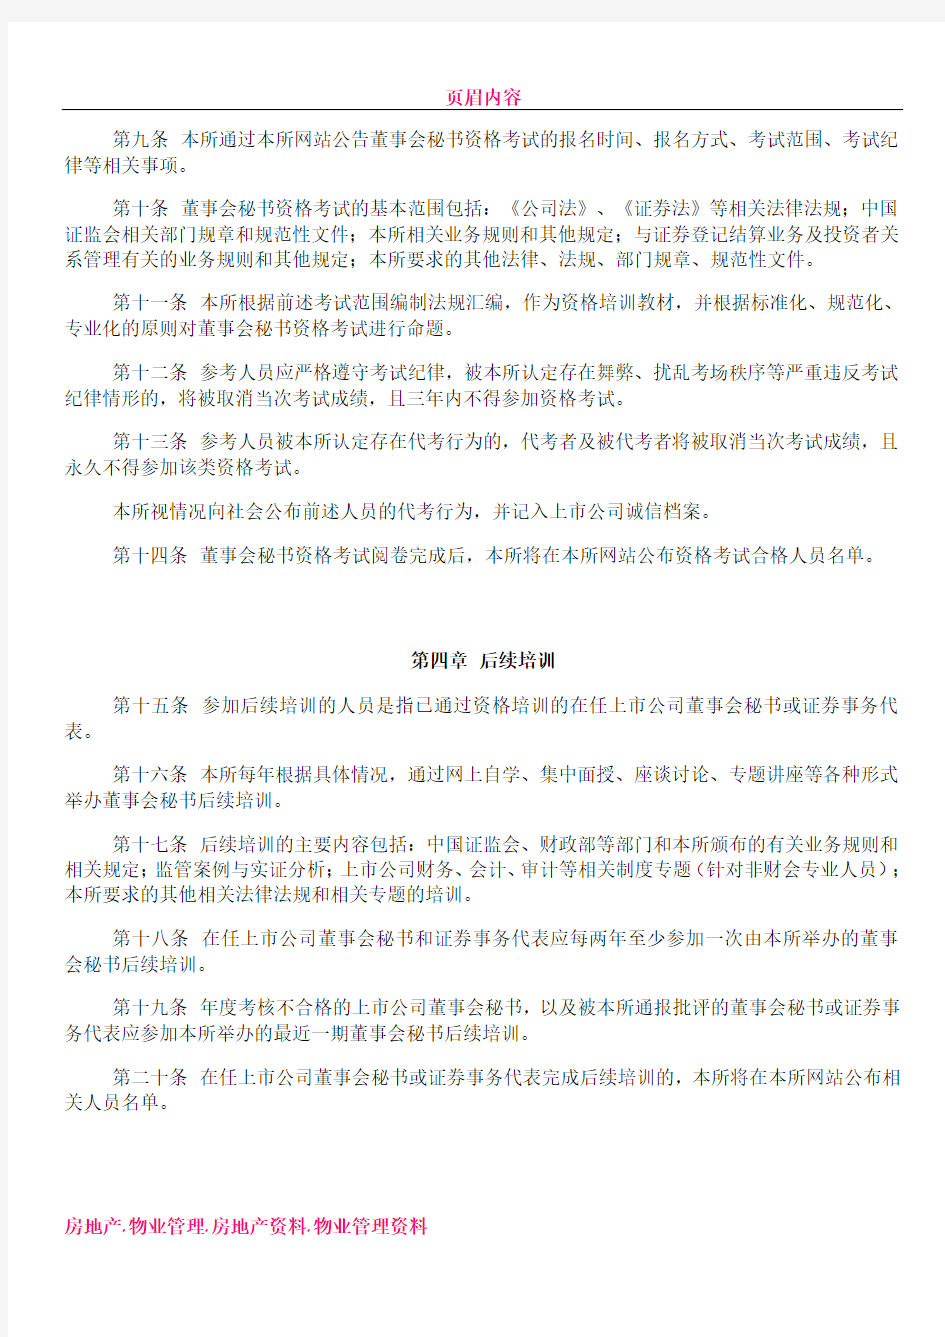 上海证券交易所上市公司董事会秘书资格管理办法